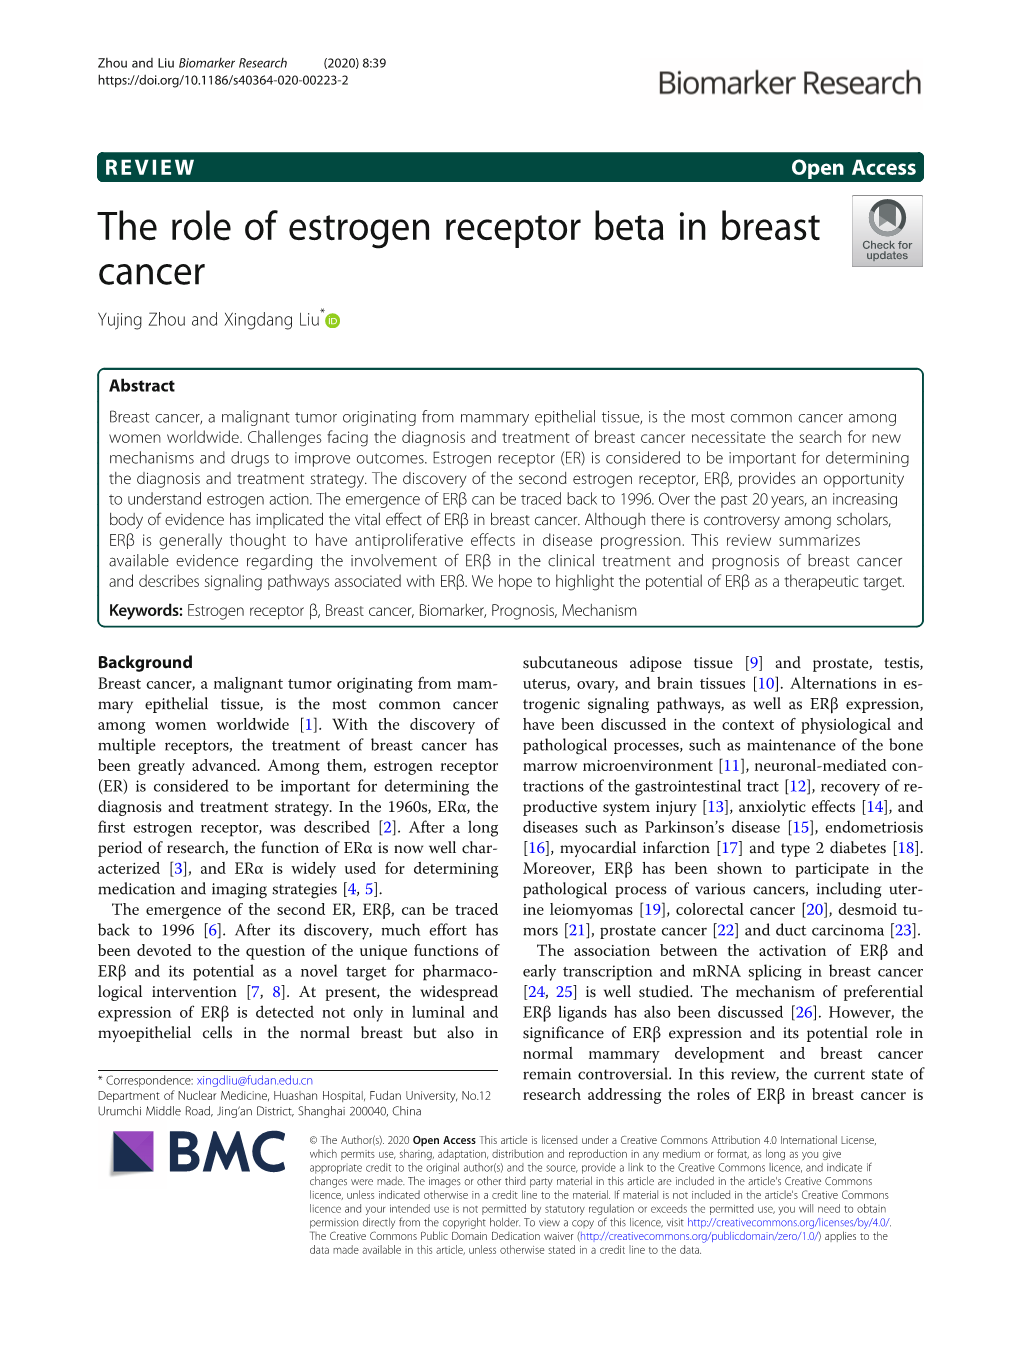 The Role of Estrogen Receptor Beta in Breast Cancer Yujing Zhou and Xingdang Liu*